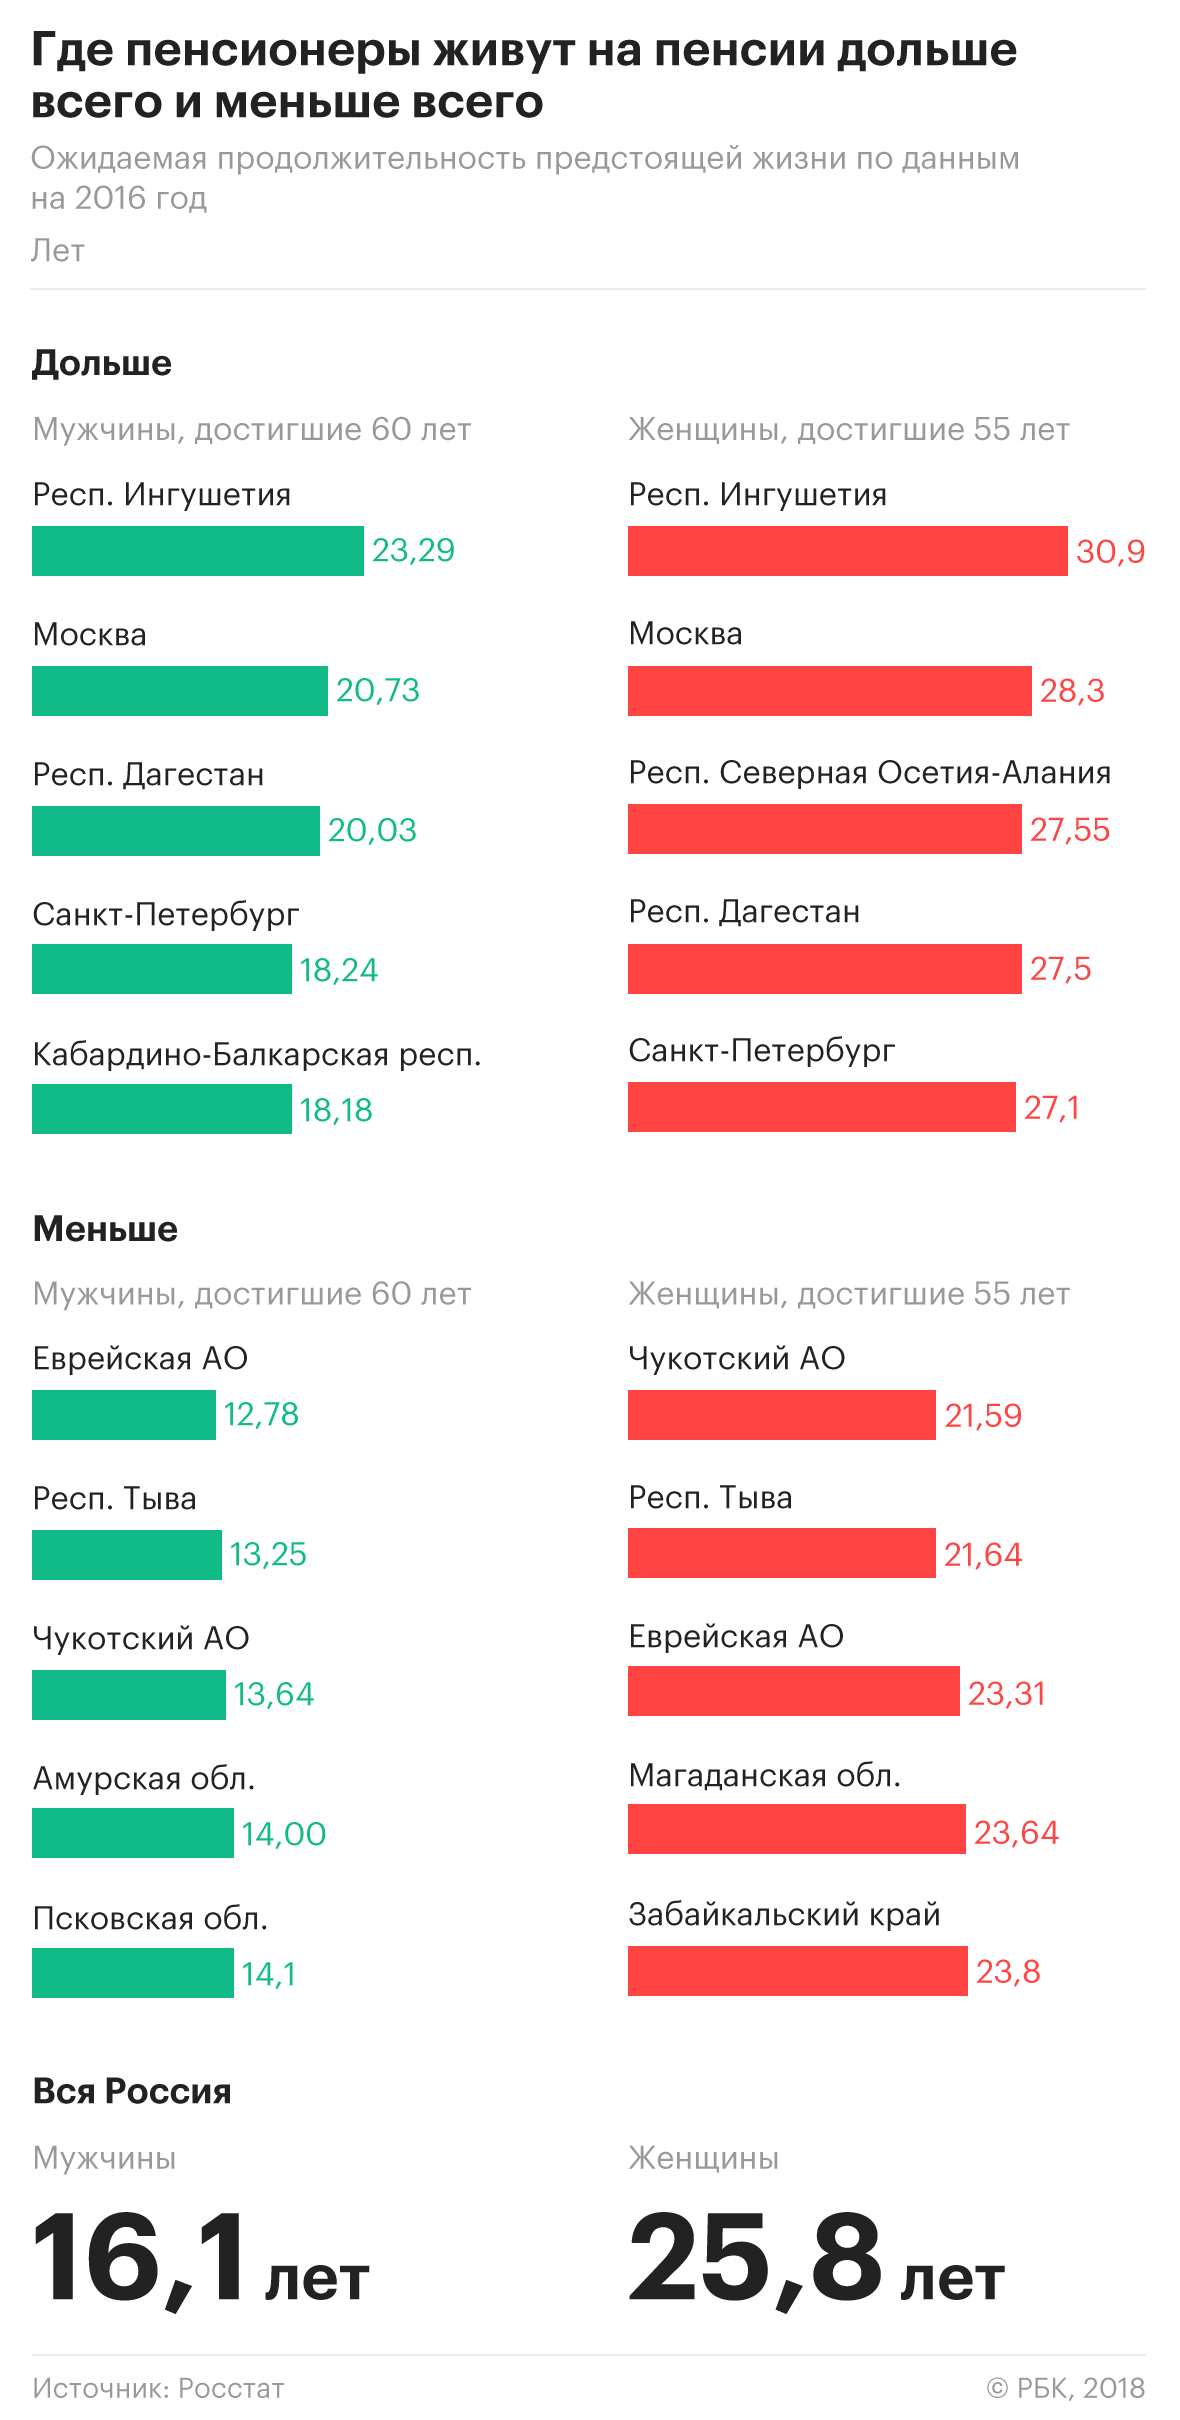 Россия на пенсии: как различается положение пенсионеров в стране